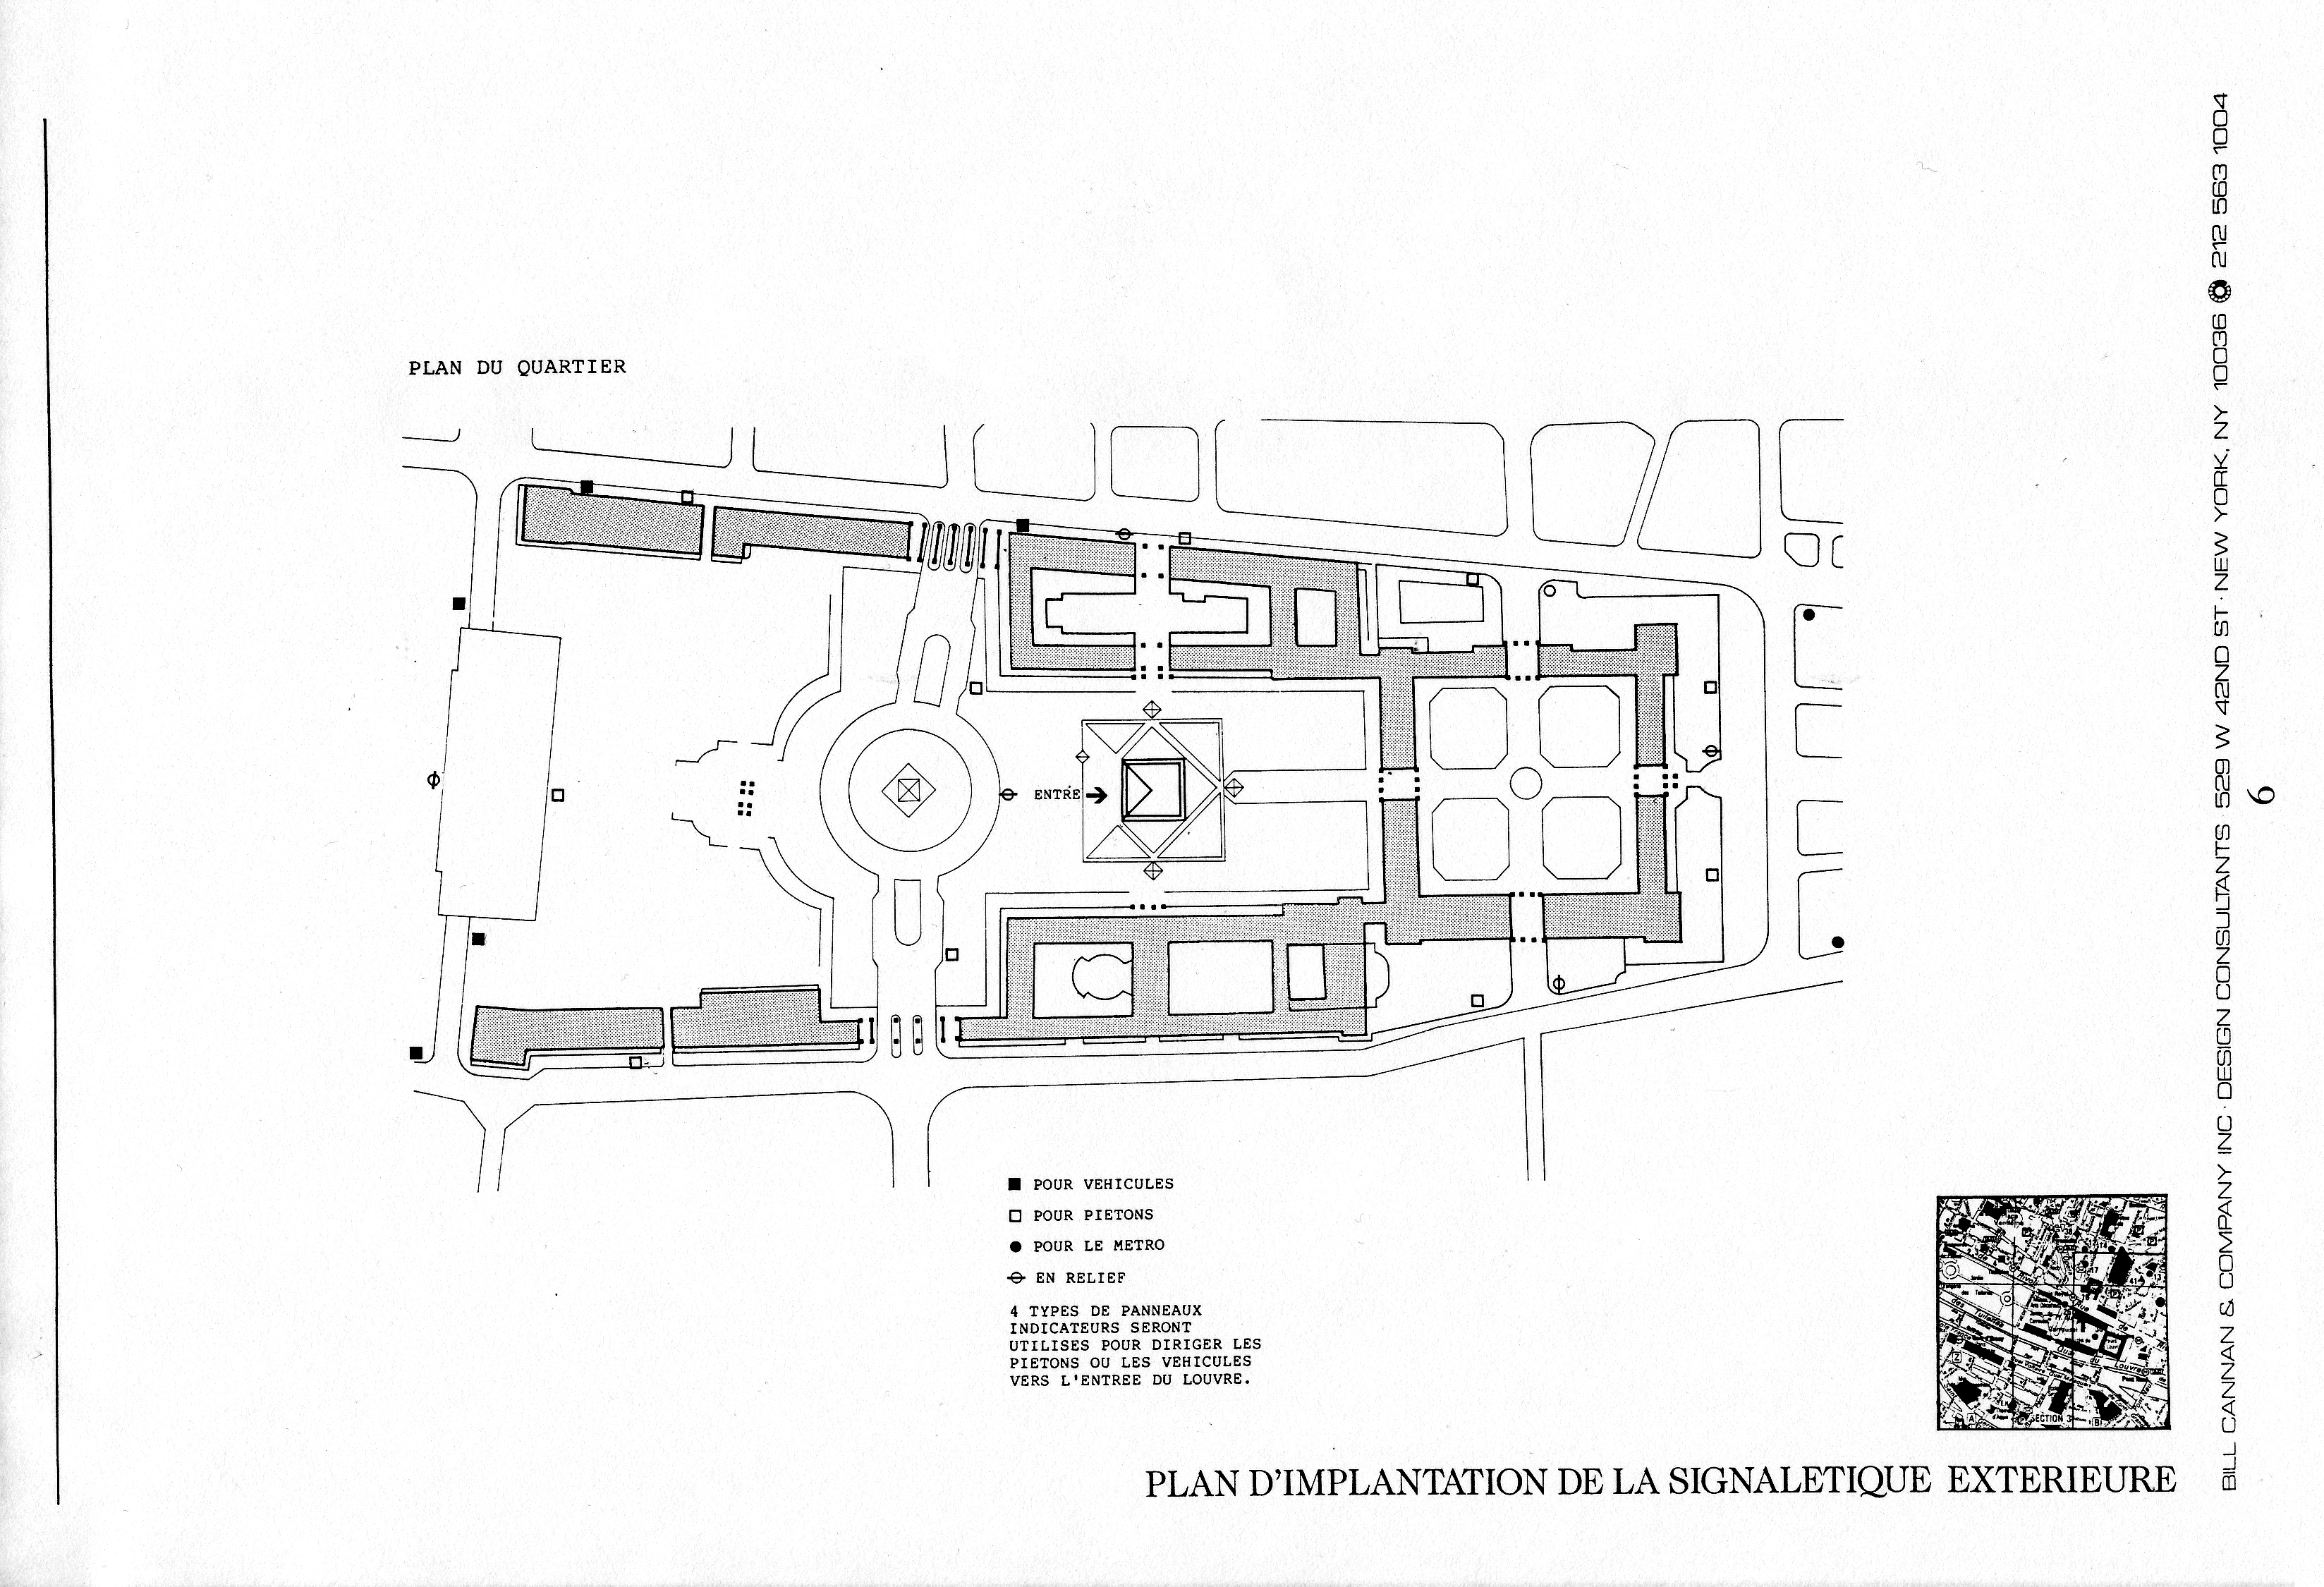 Louvre proposal sketch 7.